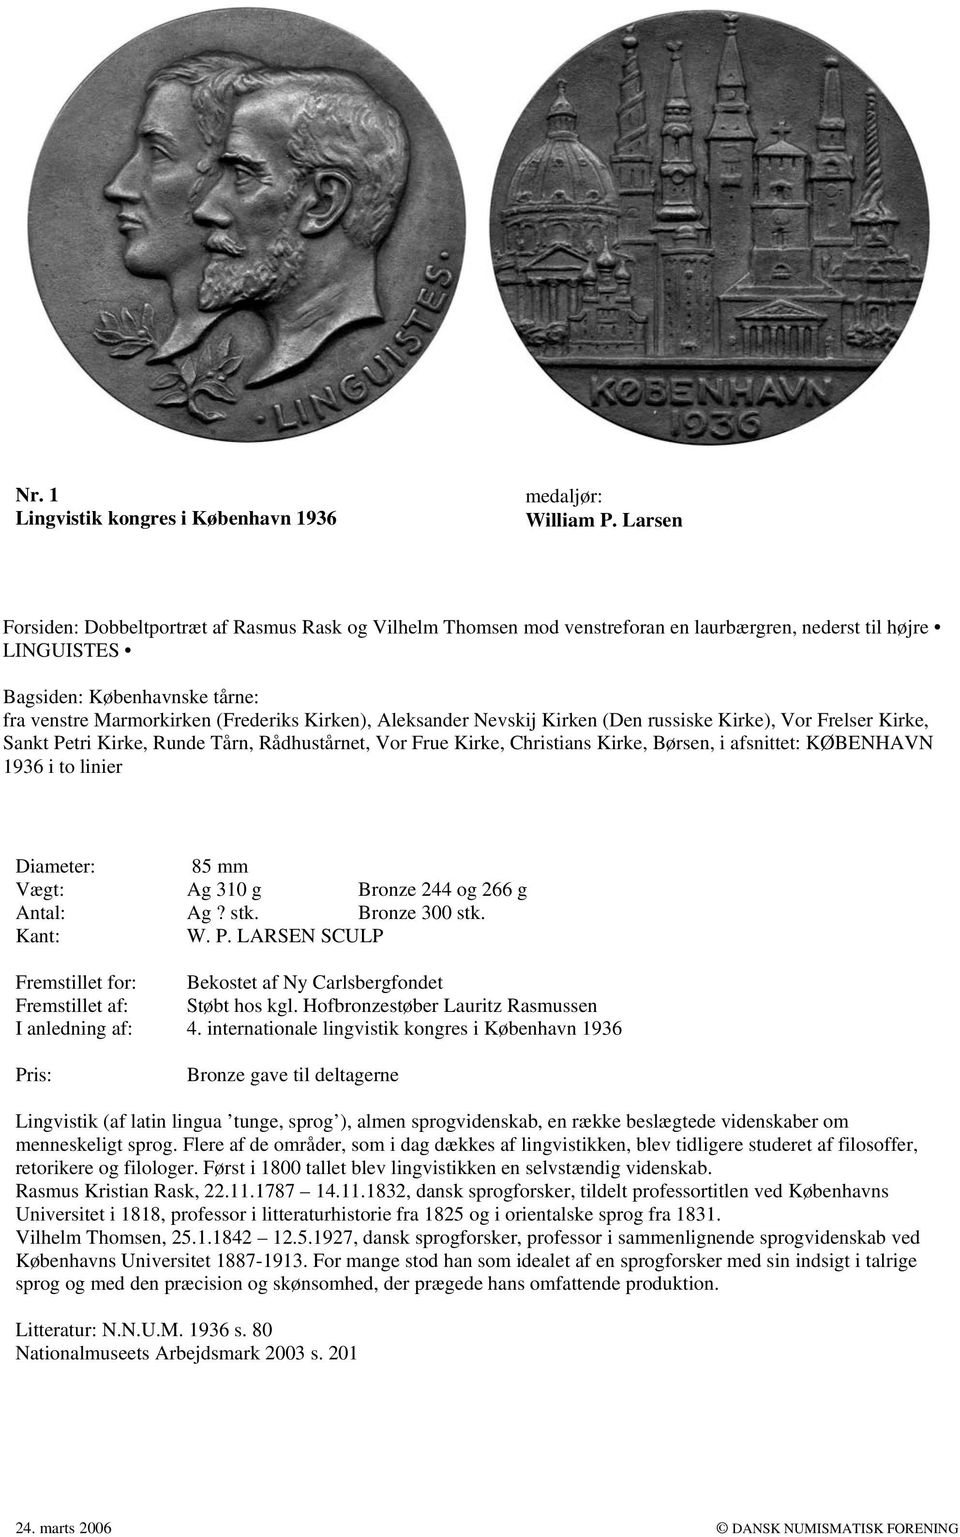 afsnittet: KØBENHAVN 1936 i to linier Diameter: 85 mm Vægt: Ag 310 g Bronze 244 og 266 g Antal: Ag? stk. Bronze 300 stk. W. P. LARSEN SCULP Bekostet af Ny Carlsbergfondet Støbt hos kgl.